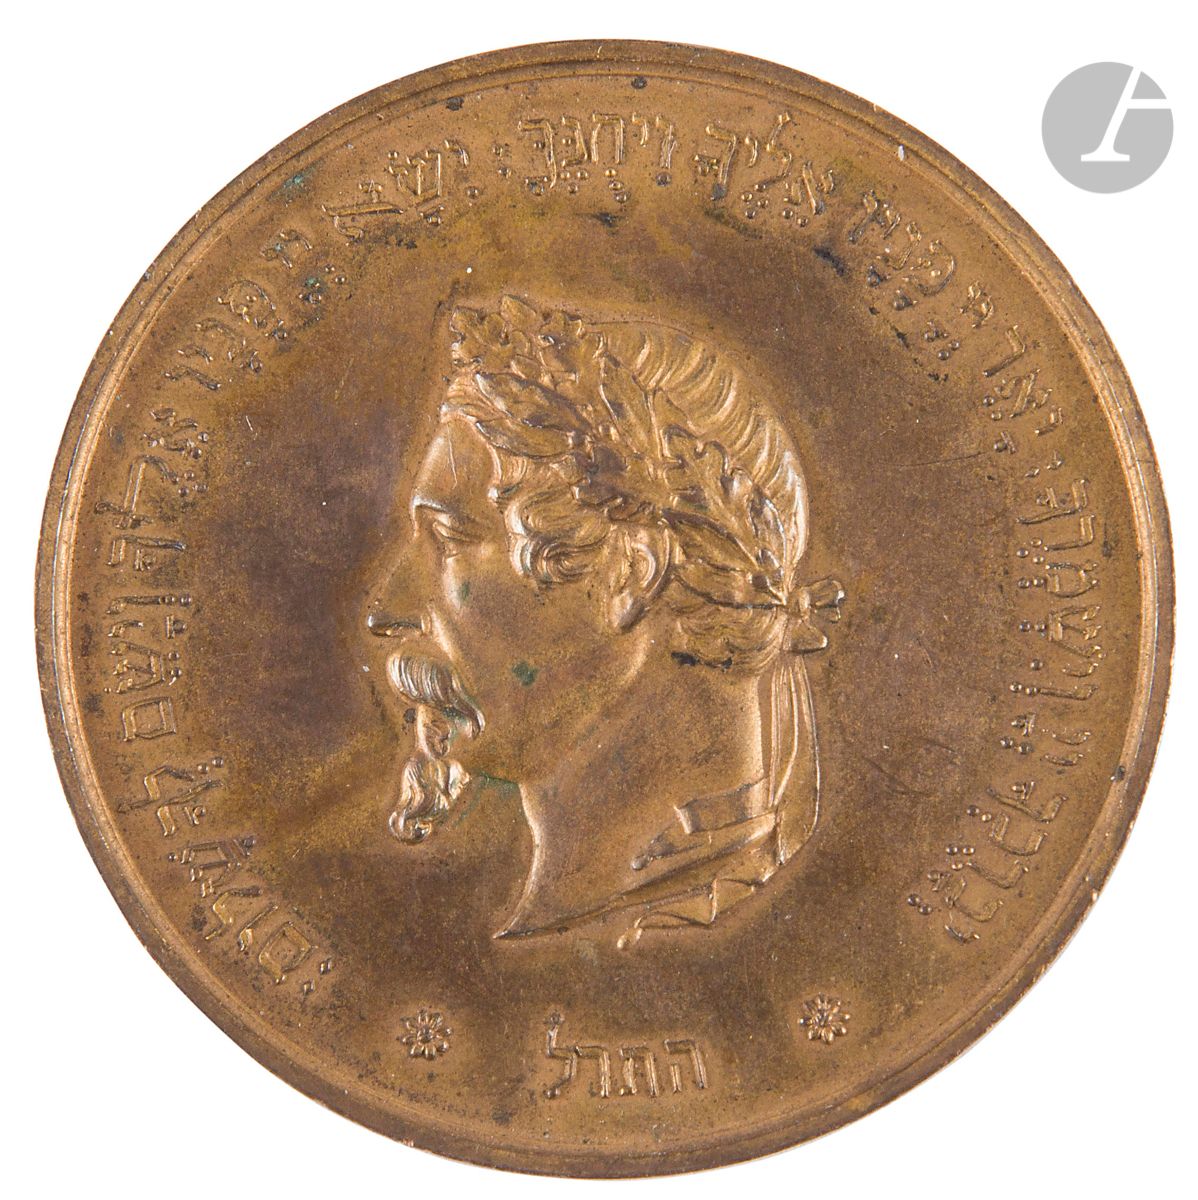 Null [奖牌]
拿破仑三世的纪念章。 
铸造青铜。
法国，1869-1870。日期为希伯来文和拉丁文字（5630）。
正面：拿破仑三世的侧面肖像复制品和希伯&hellip;